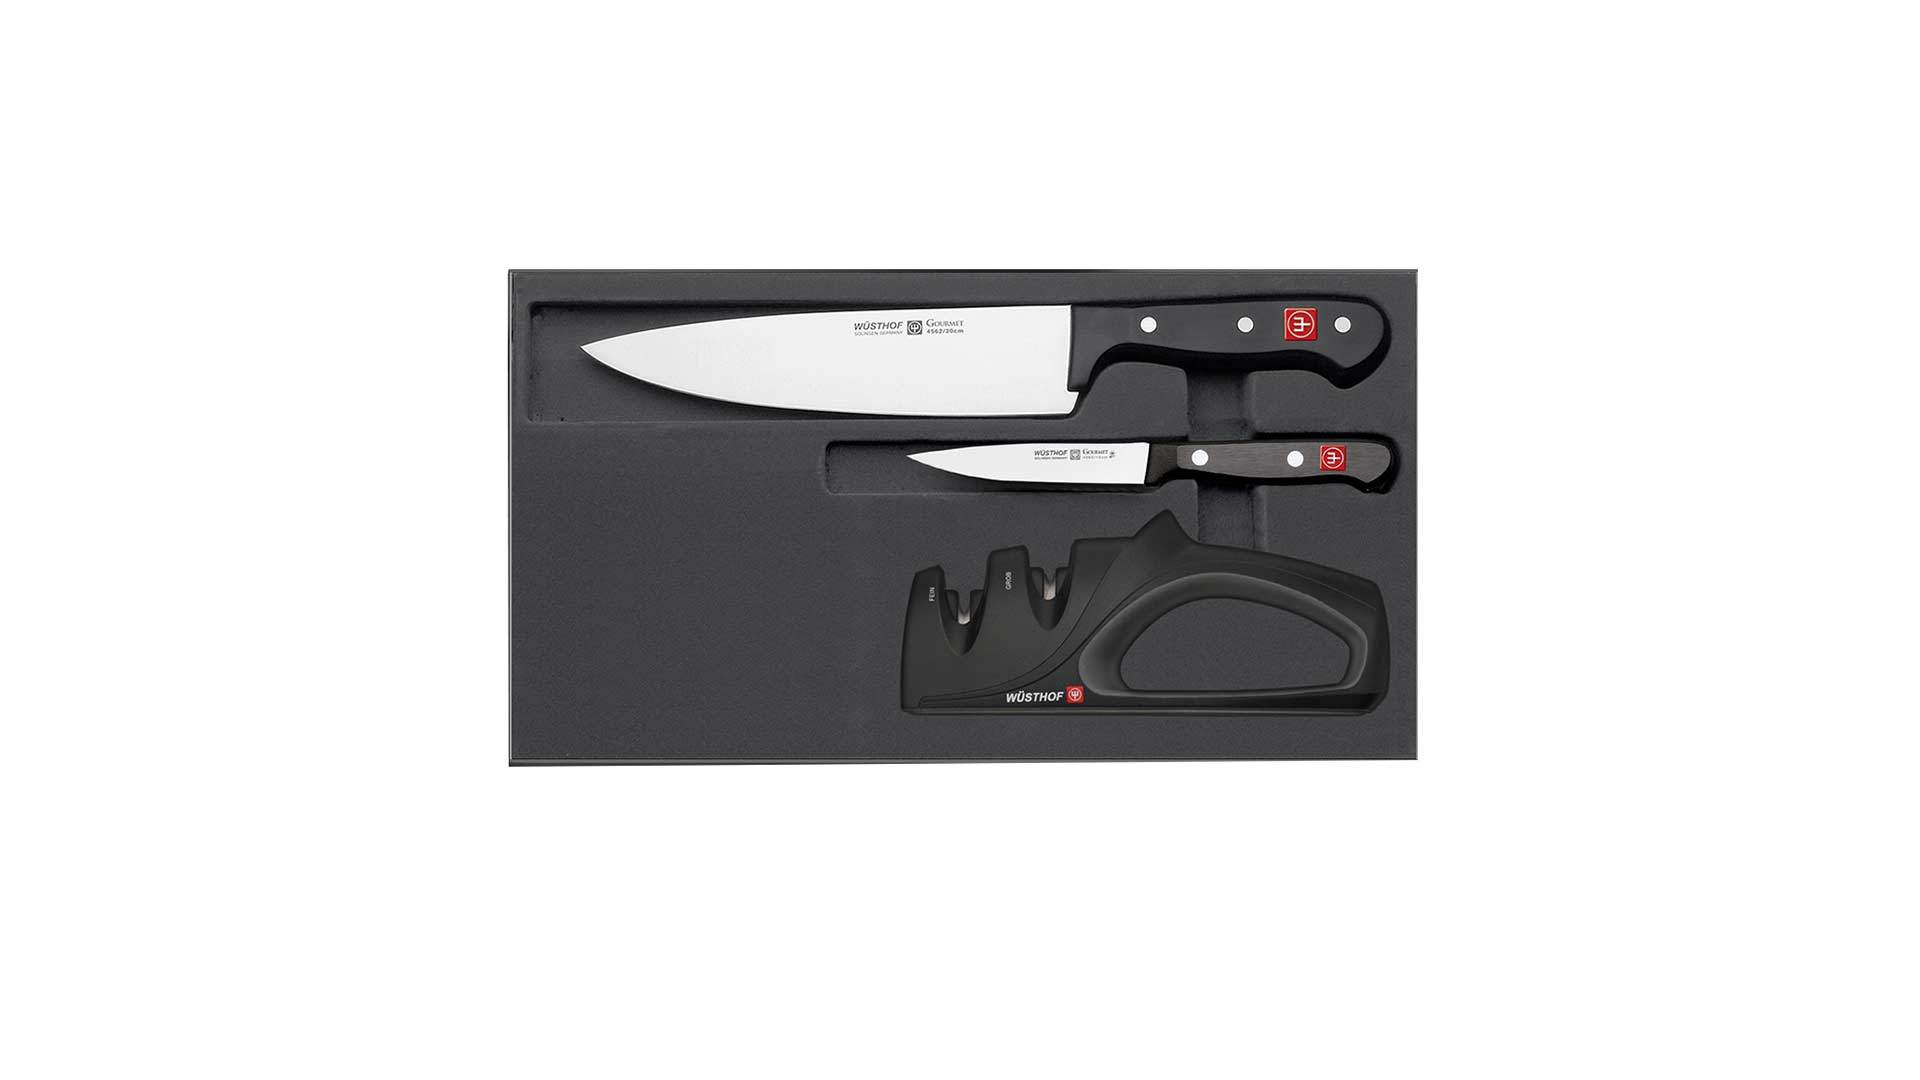 Набор кухонных ножей и точилки Wuesthof Gourmet Promotion, 3 предмета, сталь кованая